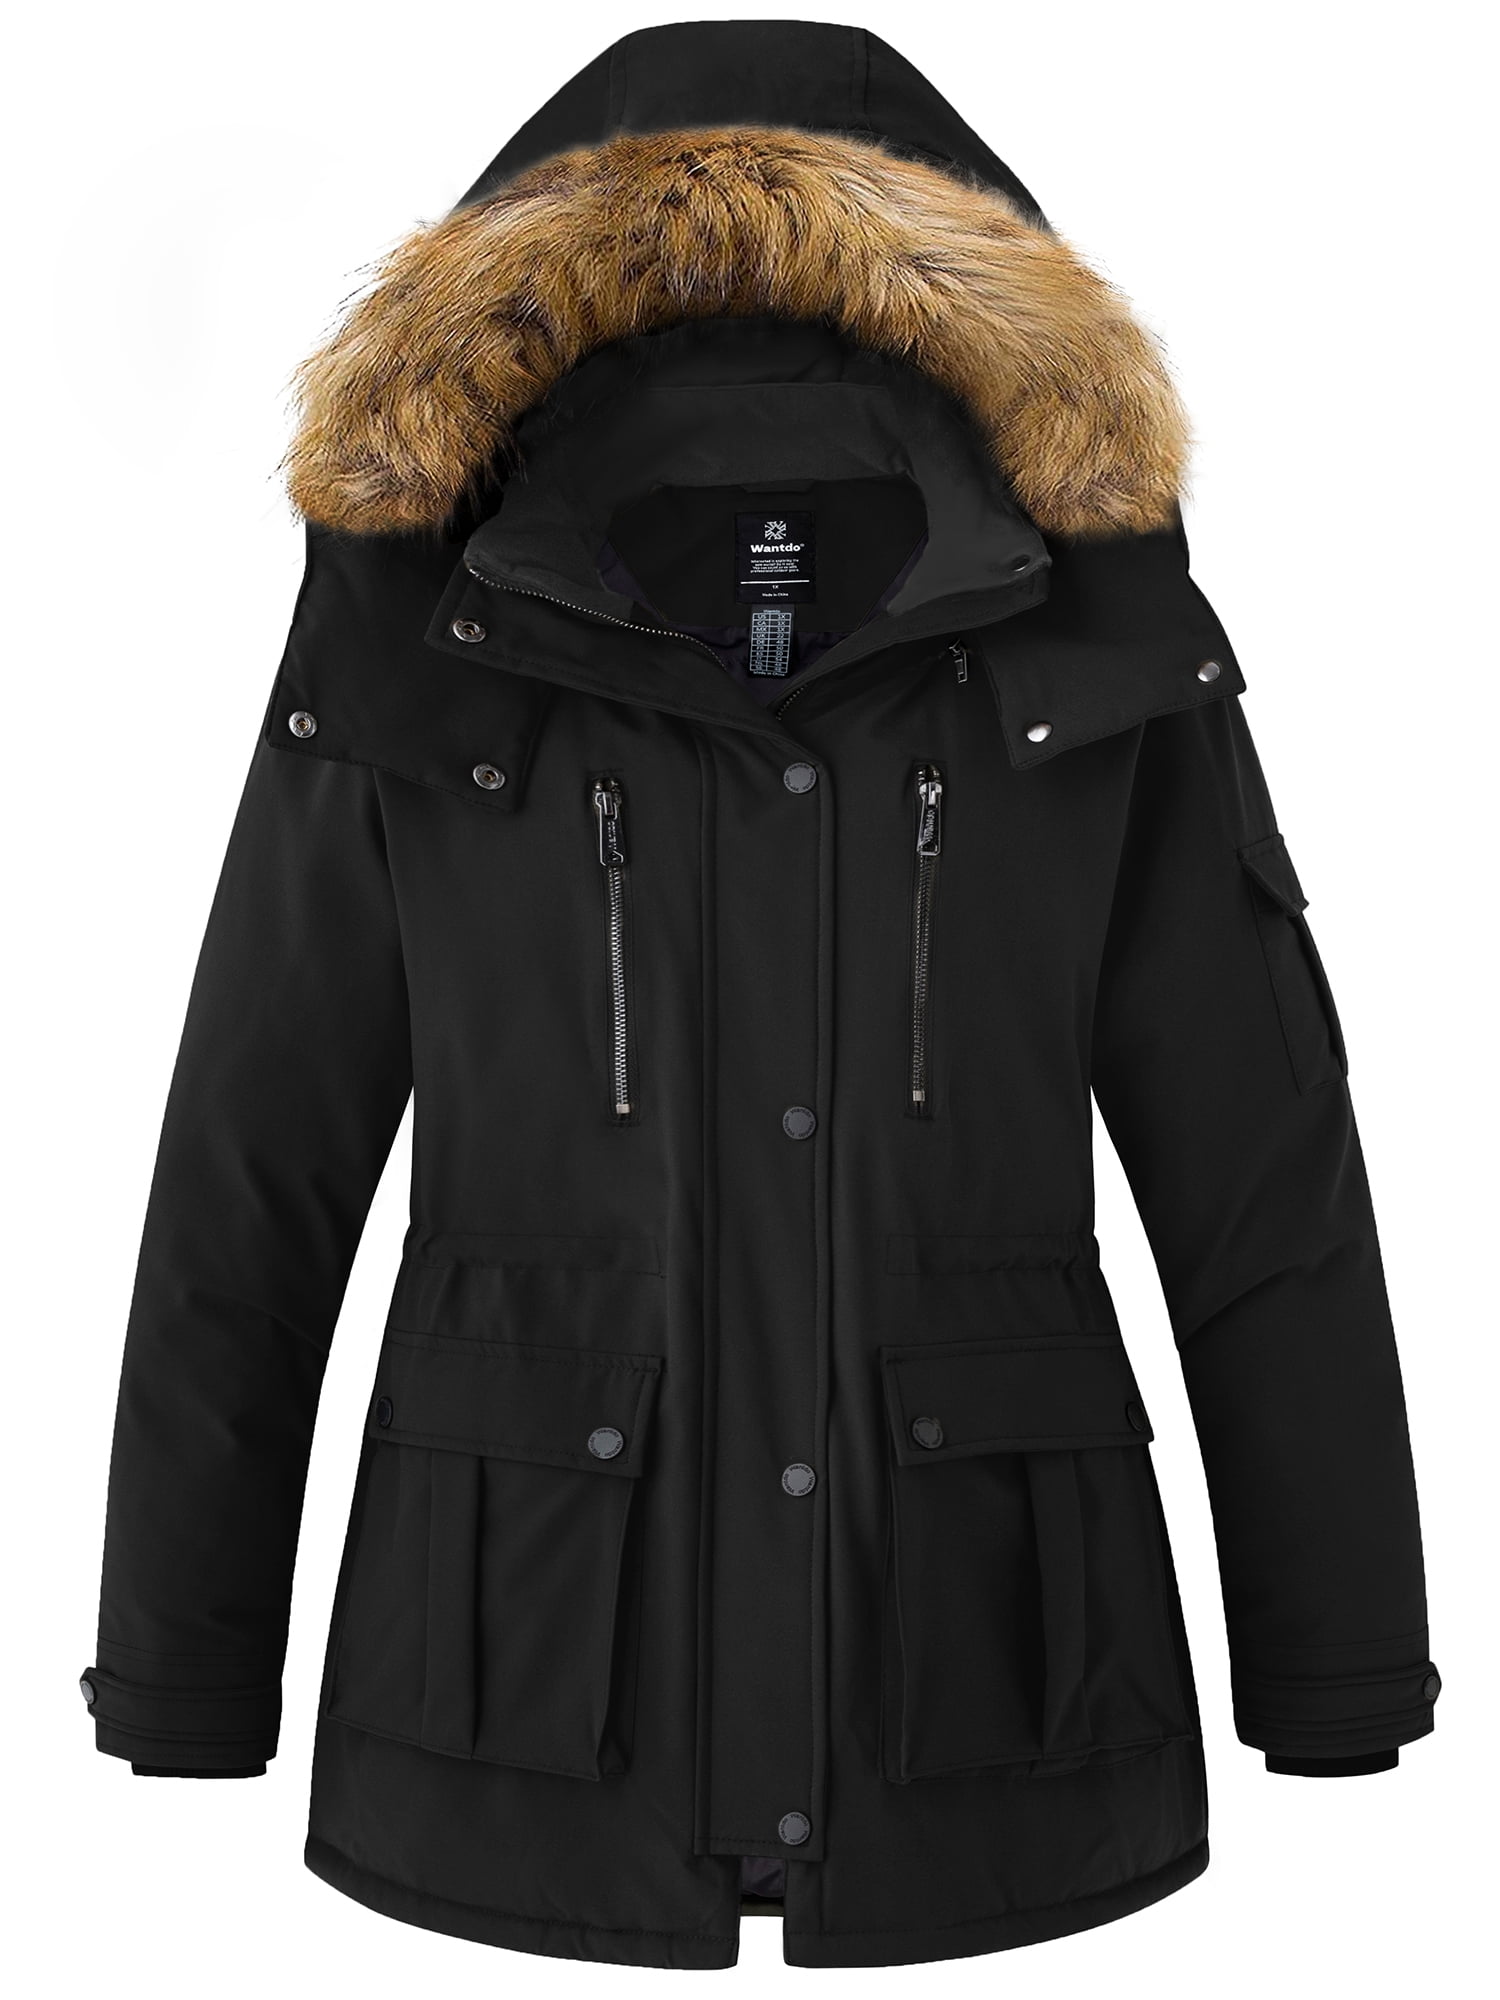 Wantdo Women's Plus Size Puffer Coat Waterproof Winter Jacket Warm Parka  Jacket Black 3X